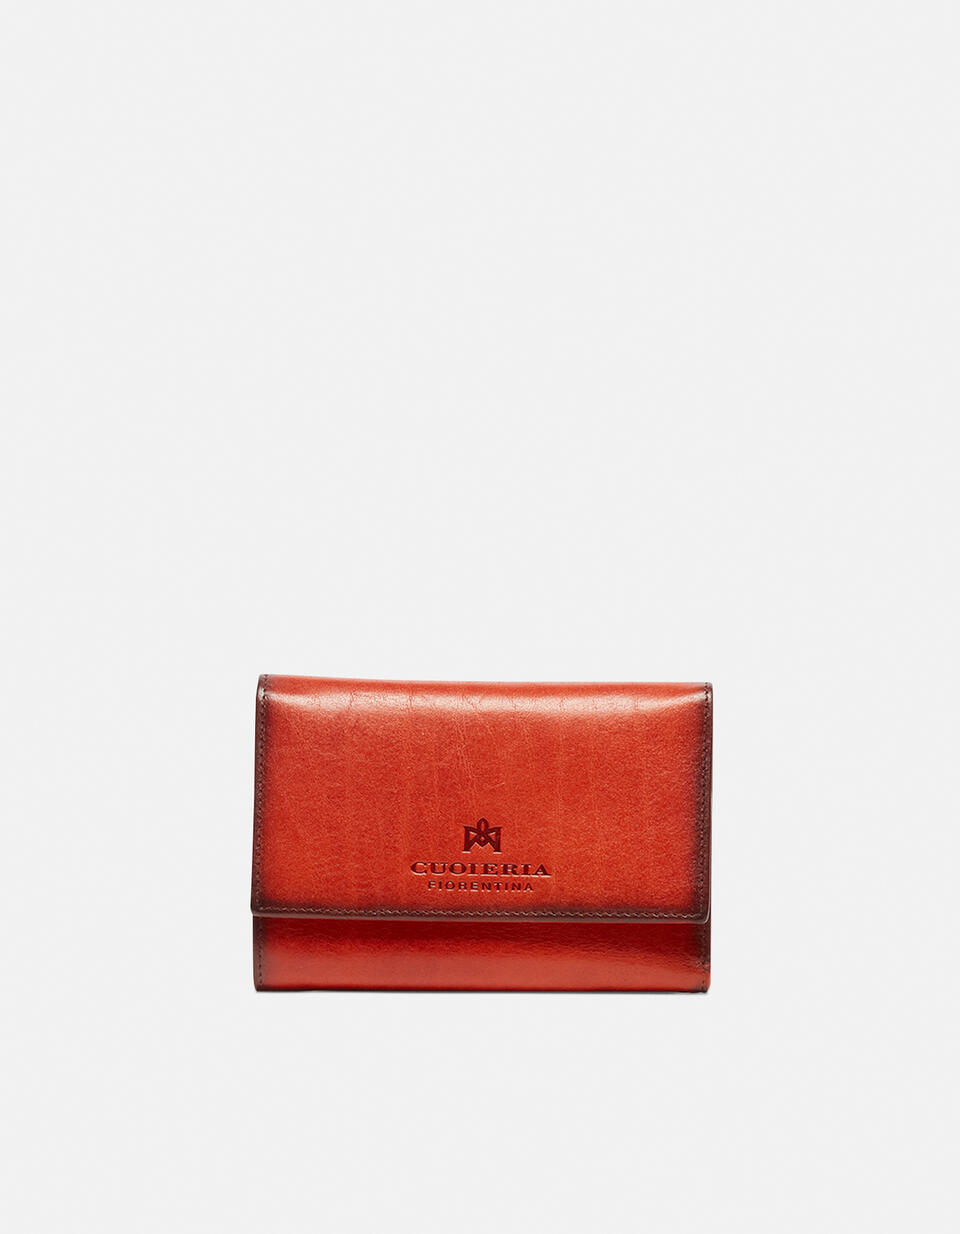 Continental wallet ARANCIO  - Women's Wallets - Women's Wallets - Wallets - Cuoieria Fiorentina